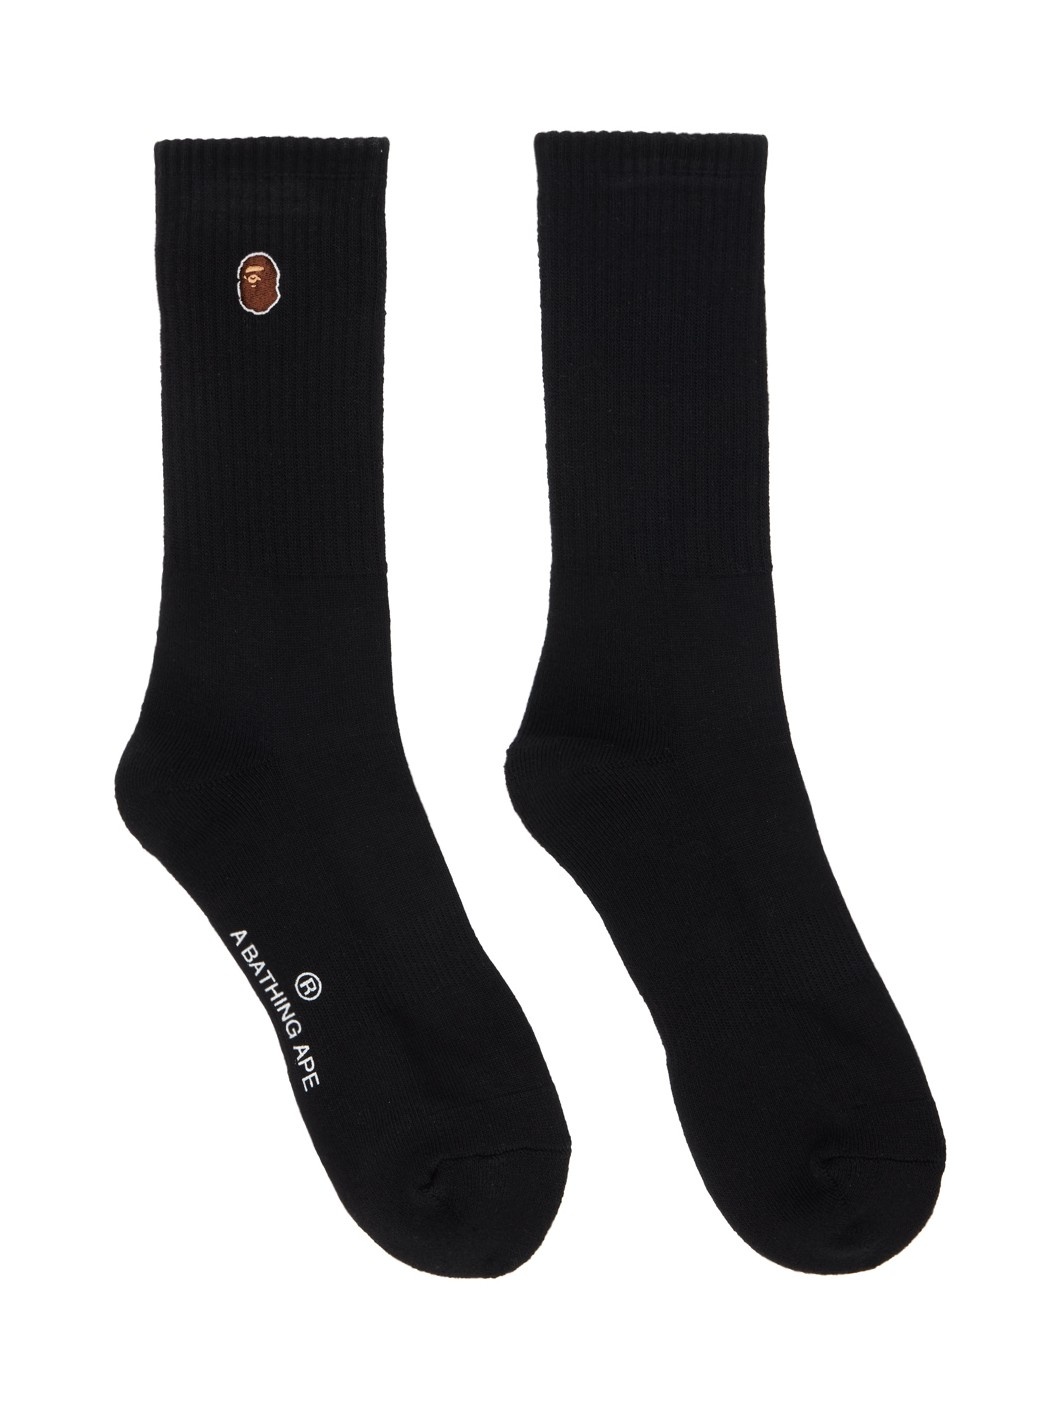 Black Ape Head Socks - 1